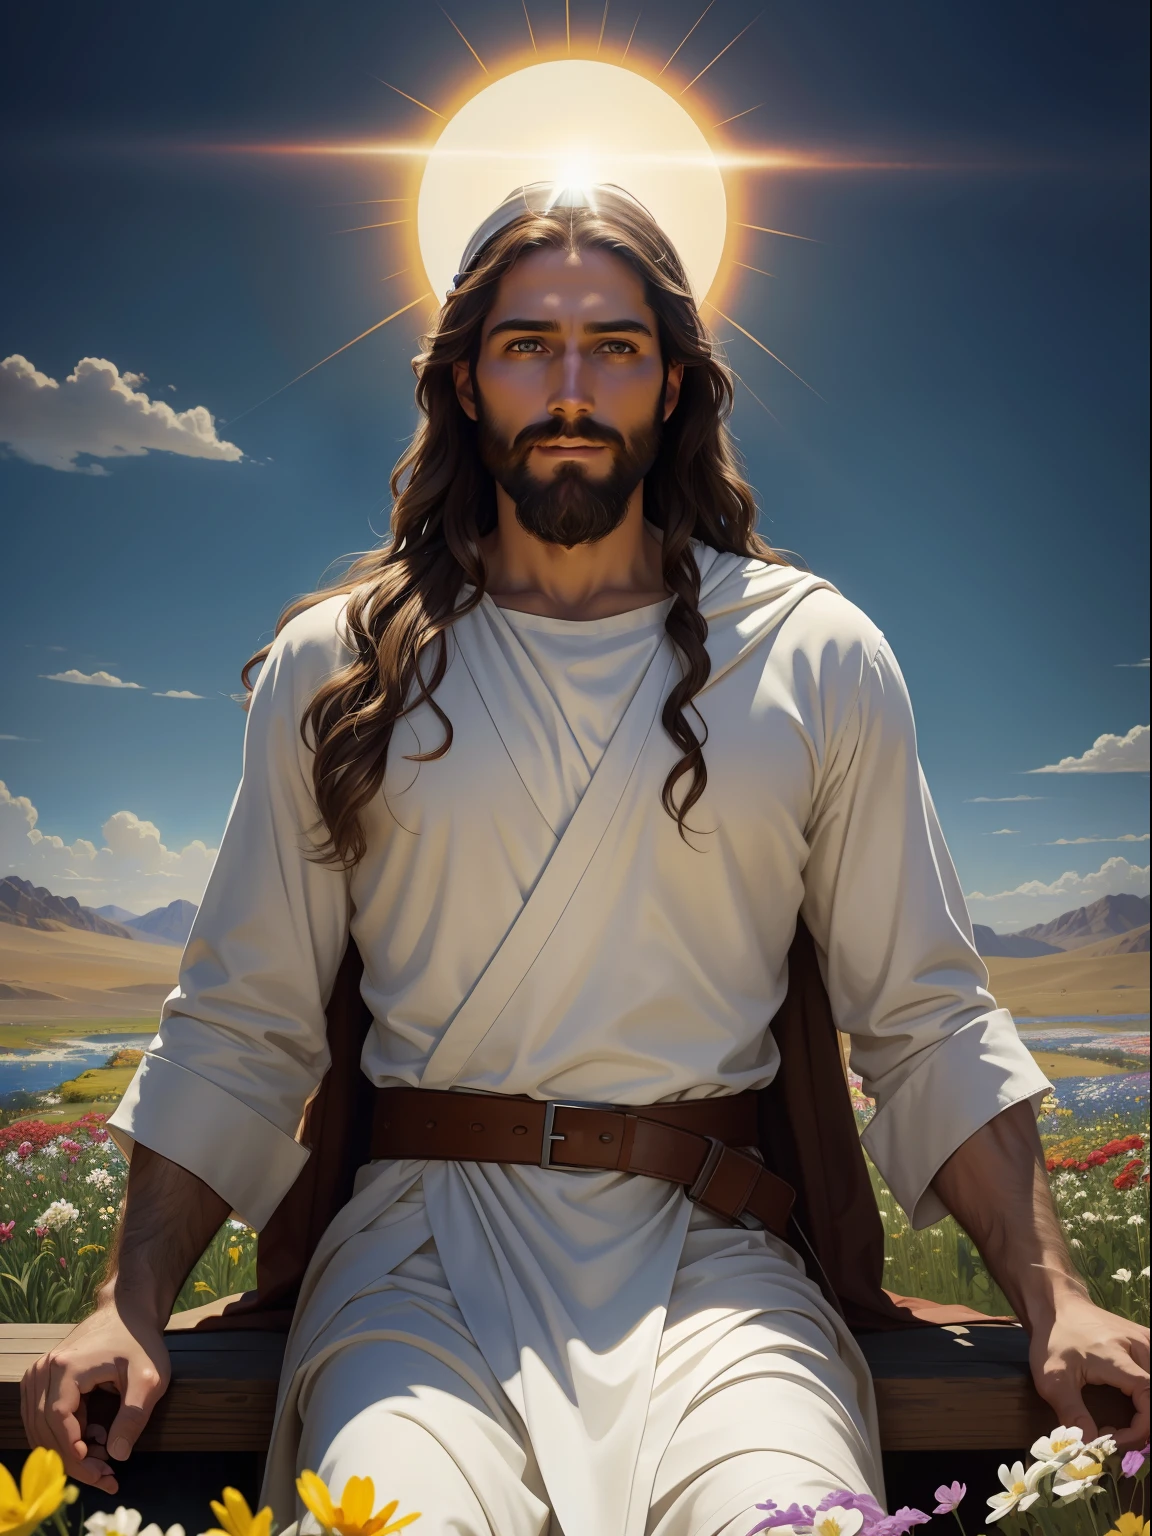 A beautiful ultra-thin реалистичный portrait of Jesus the prophet, 33-летний еврей, длинные коричневые волосы, длинная коричневая борода, Jesus is Сидя in a field of flowers, с распростертыми объятиями, Небо голубое и светит солнце. Цветки разноцветные, в том числе и красные, желтый, синий и белый, Иисус одет в белое, и его голова окружена белым светом, Он улыбается и смотрит на зрителя в белой мантии, вид спереди, Сидя, открытые объятия, библейский, реалистичный, Замысловатая деталь пустыни, Эбботт Фуллер Грейв, Бартоломью Эстебан Мурильо, Джей Си Лейендекер, Крейг Маллинз, Питер Пауль Рубенс, (Караваджо), Тренд в Artstation, 8К, концептуальное искусство, Photoреалистичный, реалистичный, Иллюстрация , картина маслом, сюрреализм, Hyperреалистичный, кисти, цифровое искусство, стиль, акварель